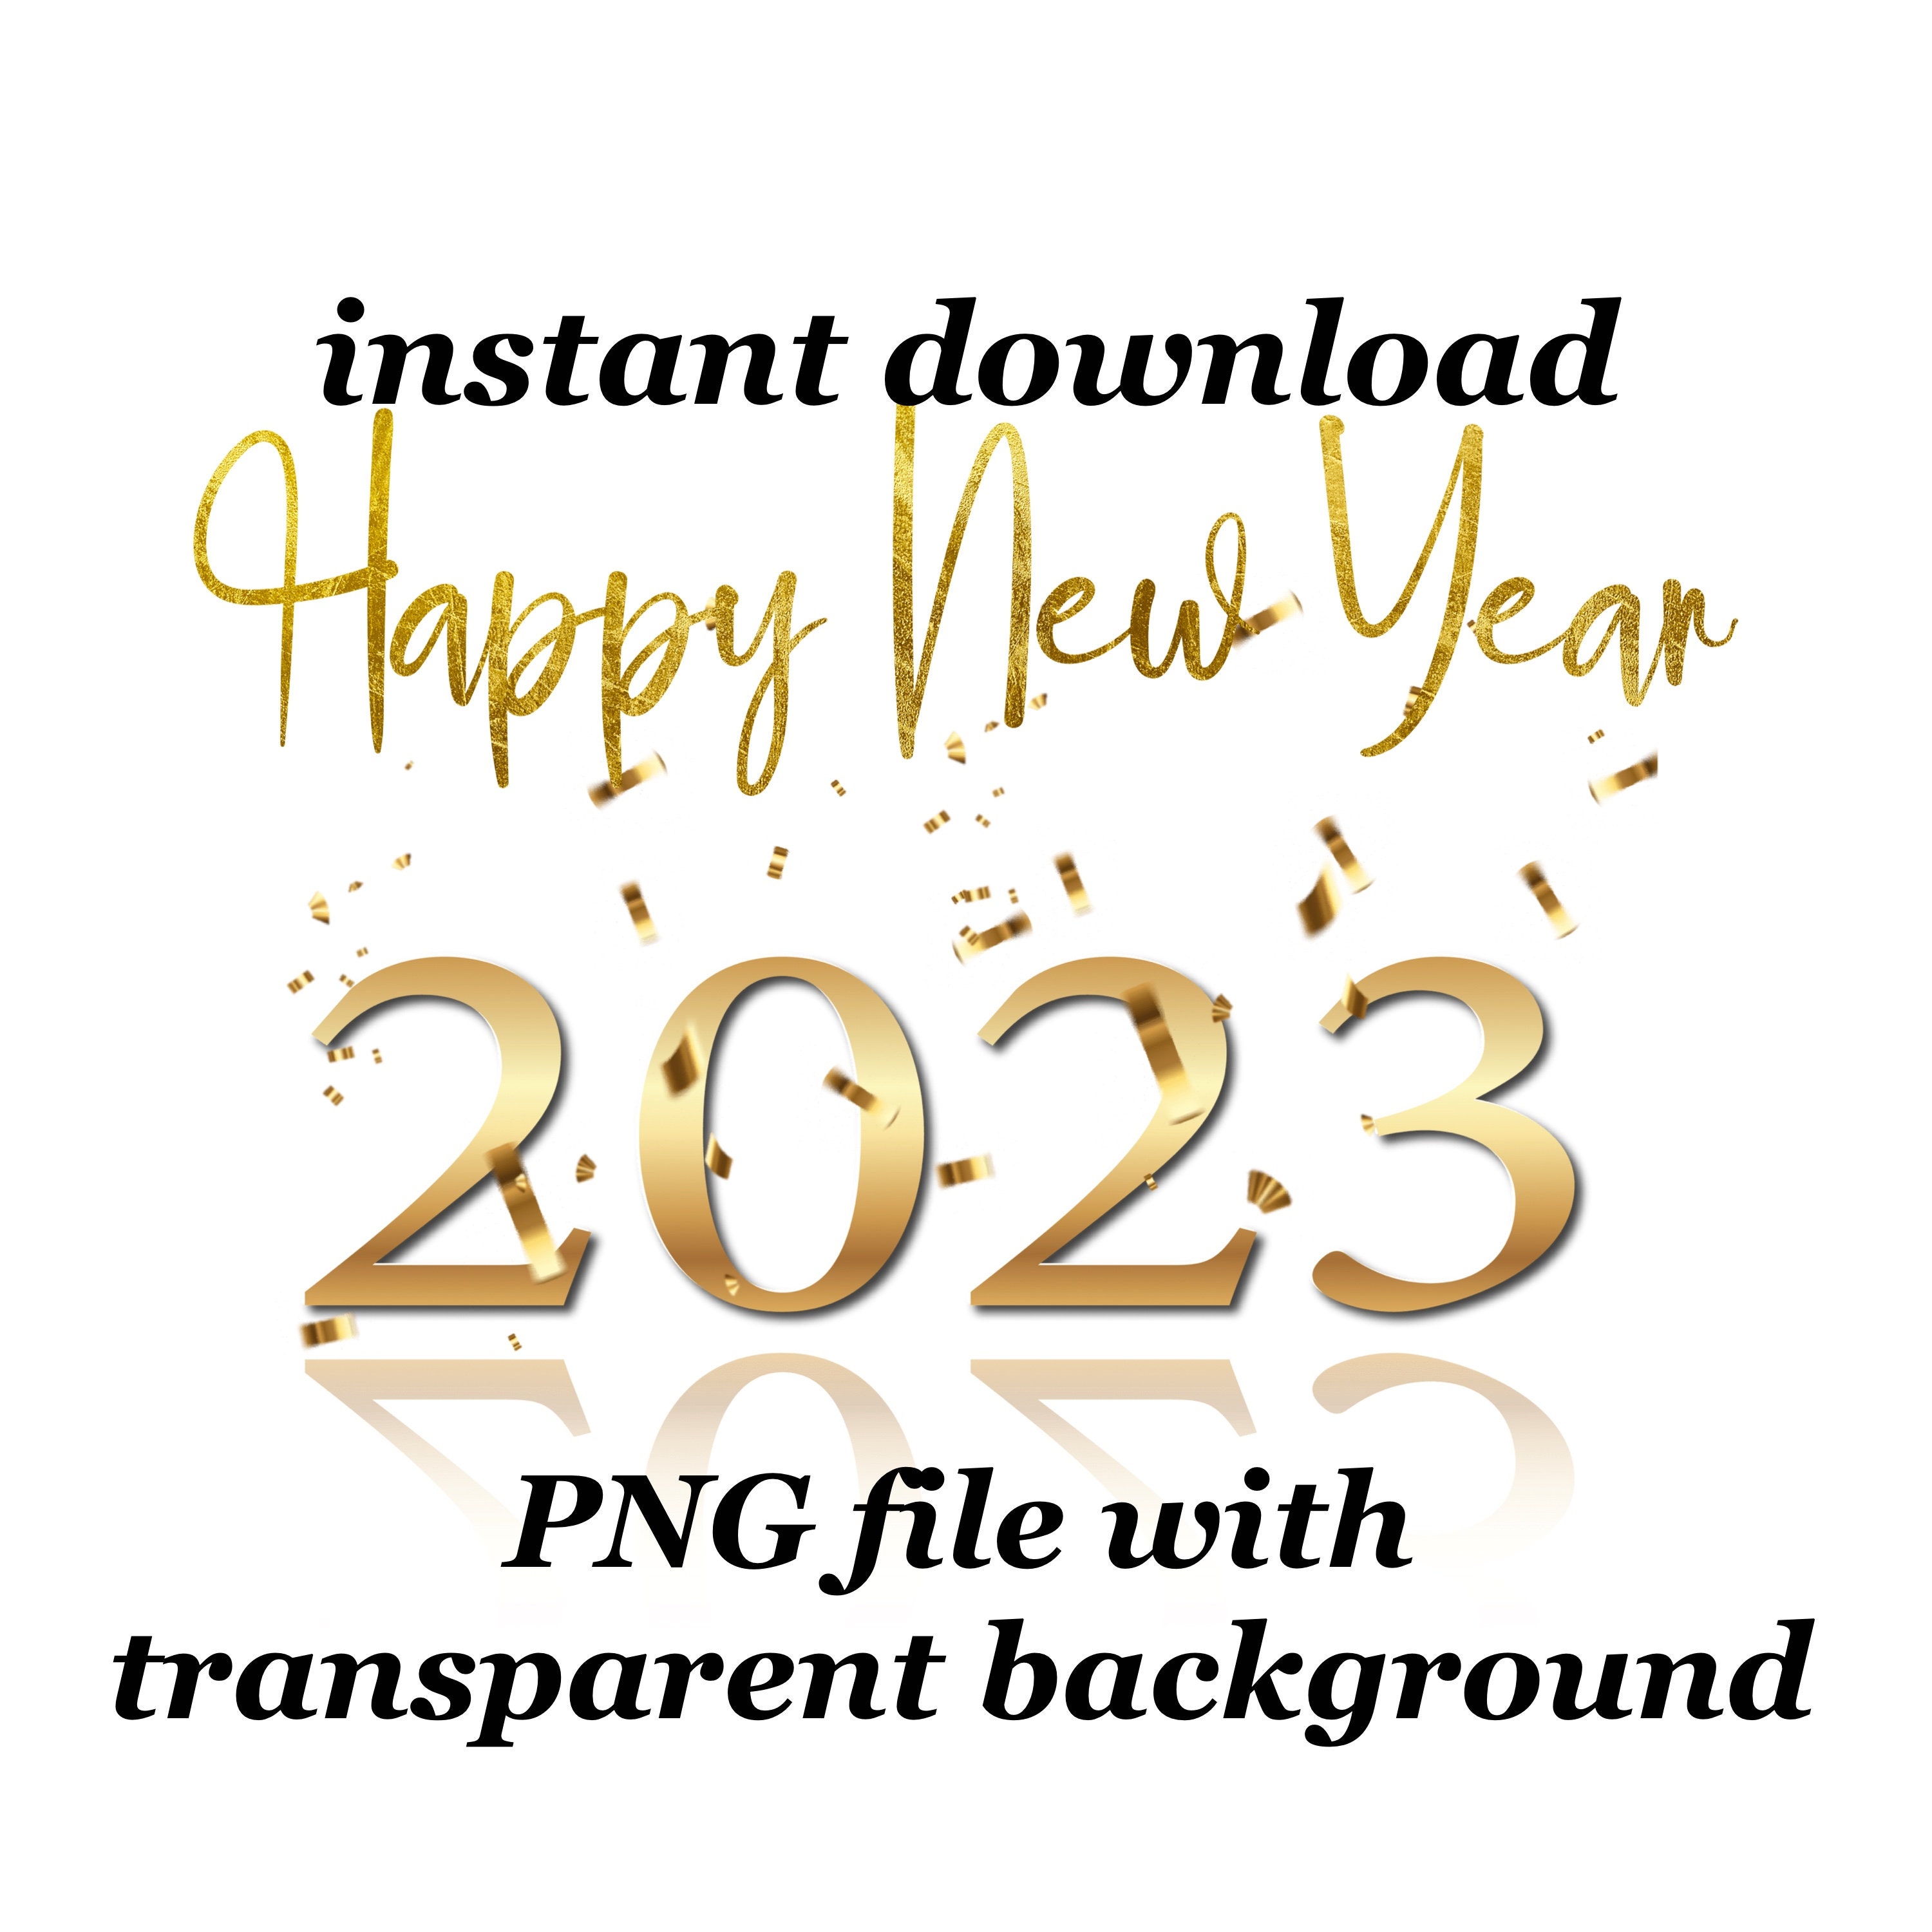 Năm mới đến rồi, bạn đang tìm kiếm một file PNG đẹp để sử dụng trong thiết kế của mình? Hãy tìm hiểu cho kỹ những tùy chọn đa dạng với chất lượng cao tại đây. Hãy chọn cho mình một tấm PNG ấn tượng nhất để bắt đầu năm mới đầy sáng tạo.